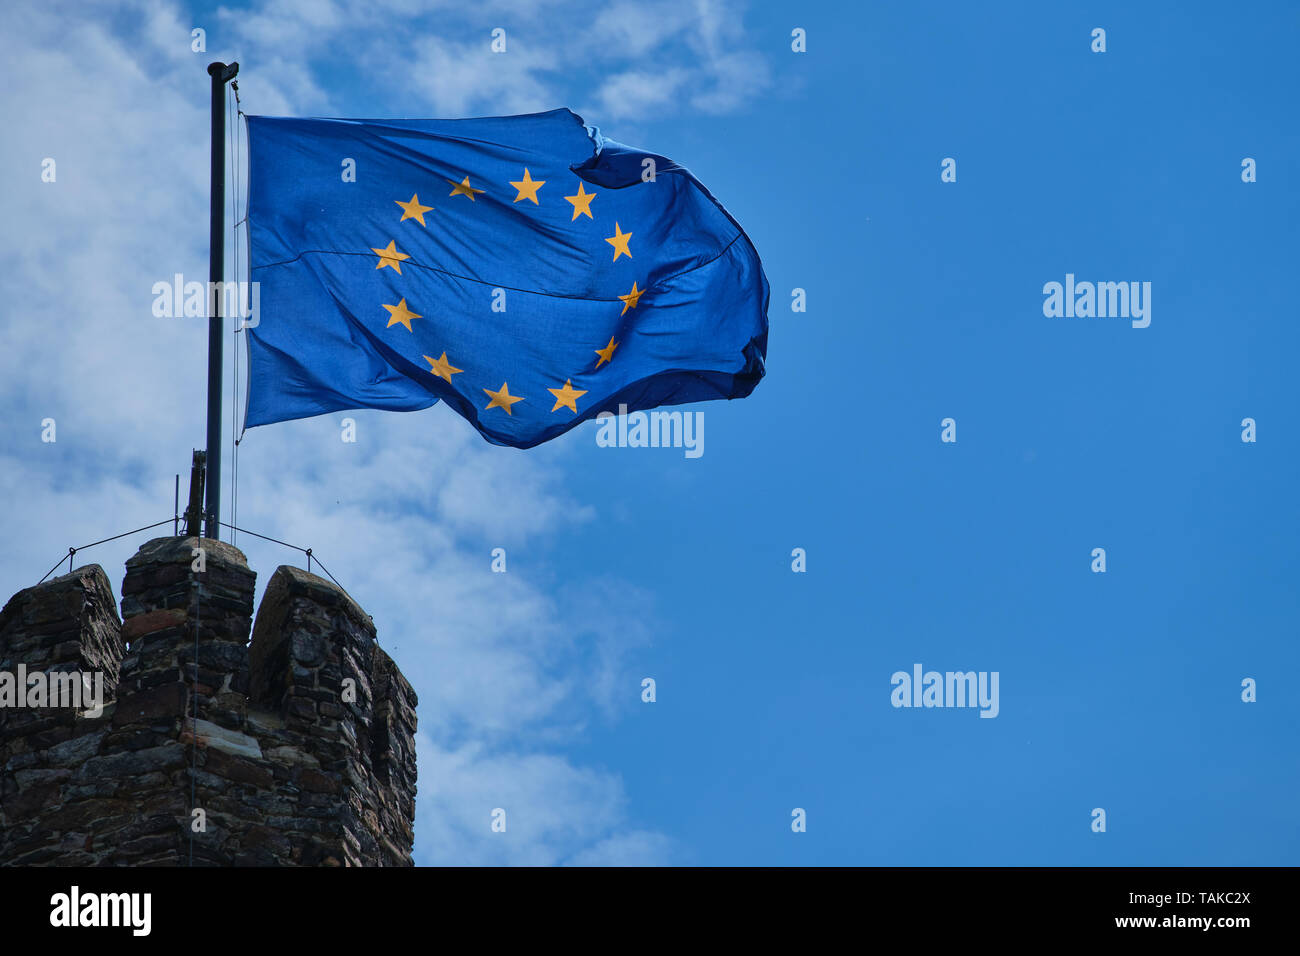 Photographie d'un Waving Flag de l'Europe sur une tour contre le ciel bleu avec des nuages Banque D'Images